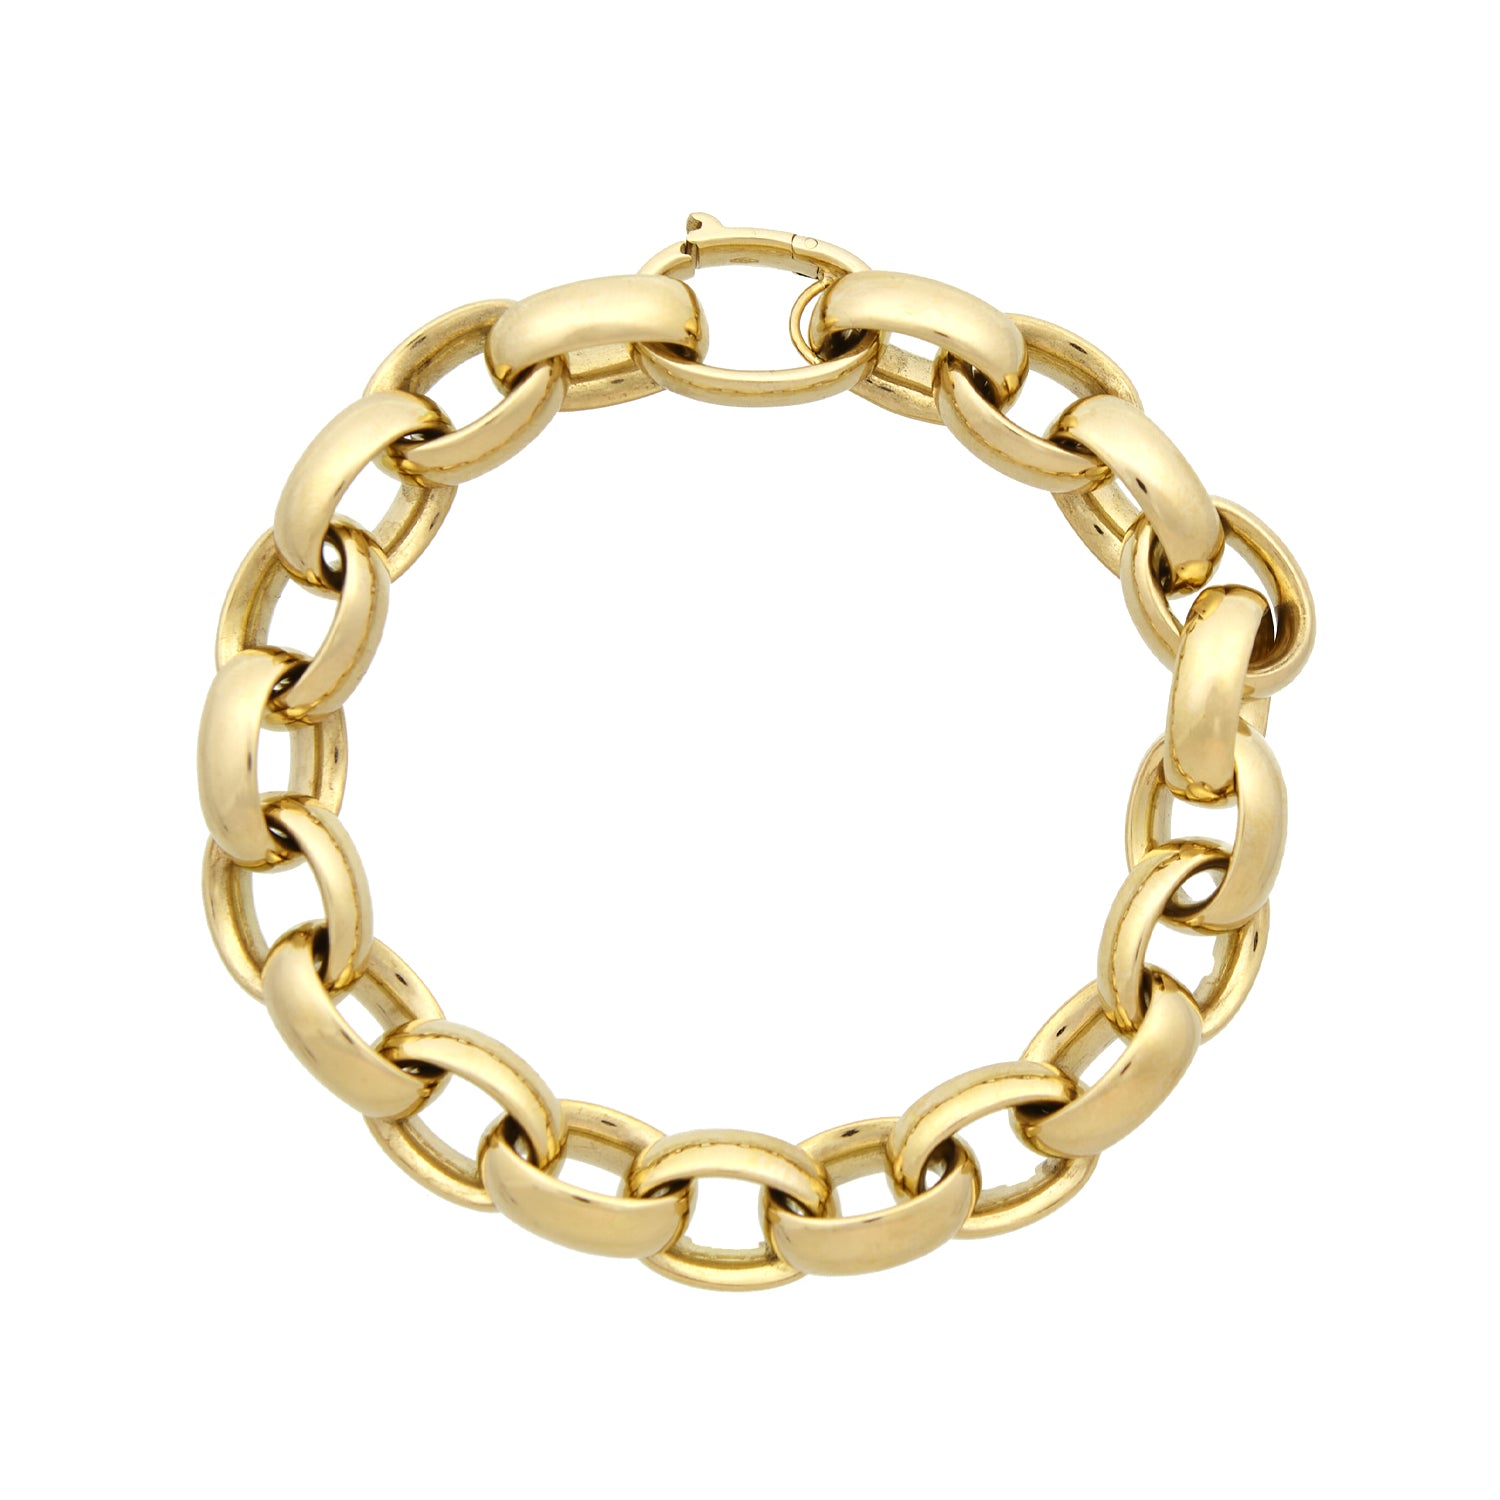 Rose gold link bracelet.